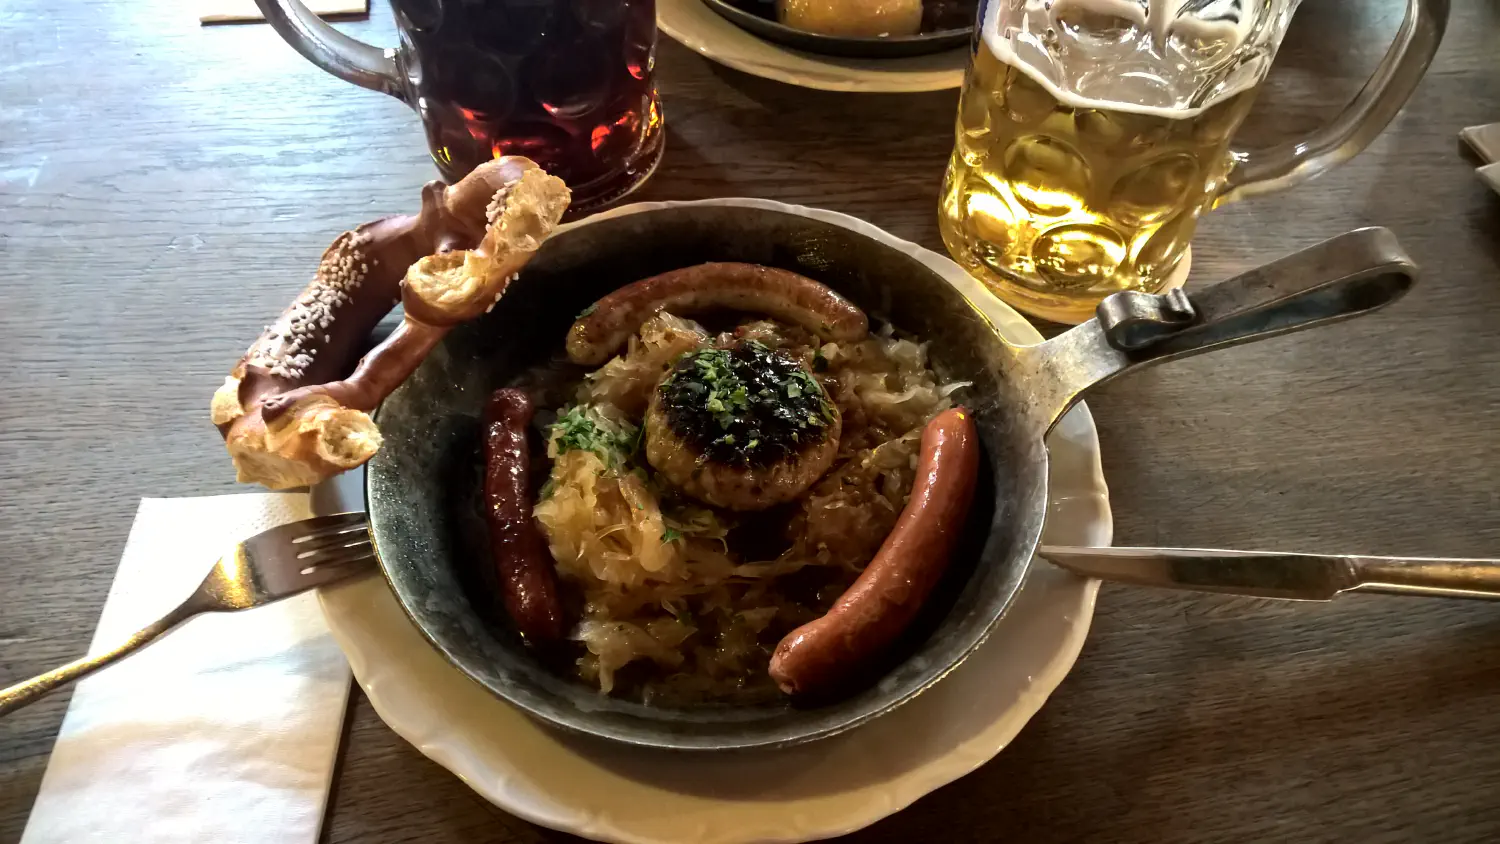 German food!